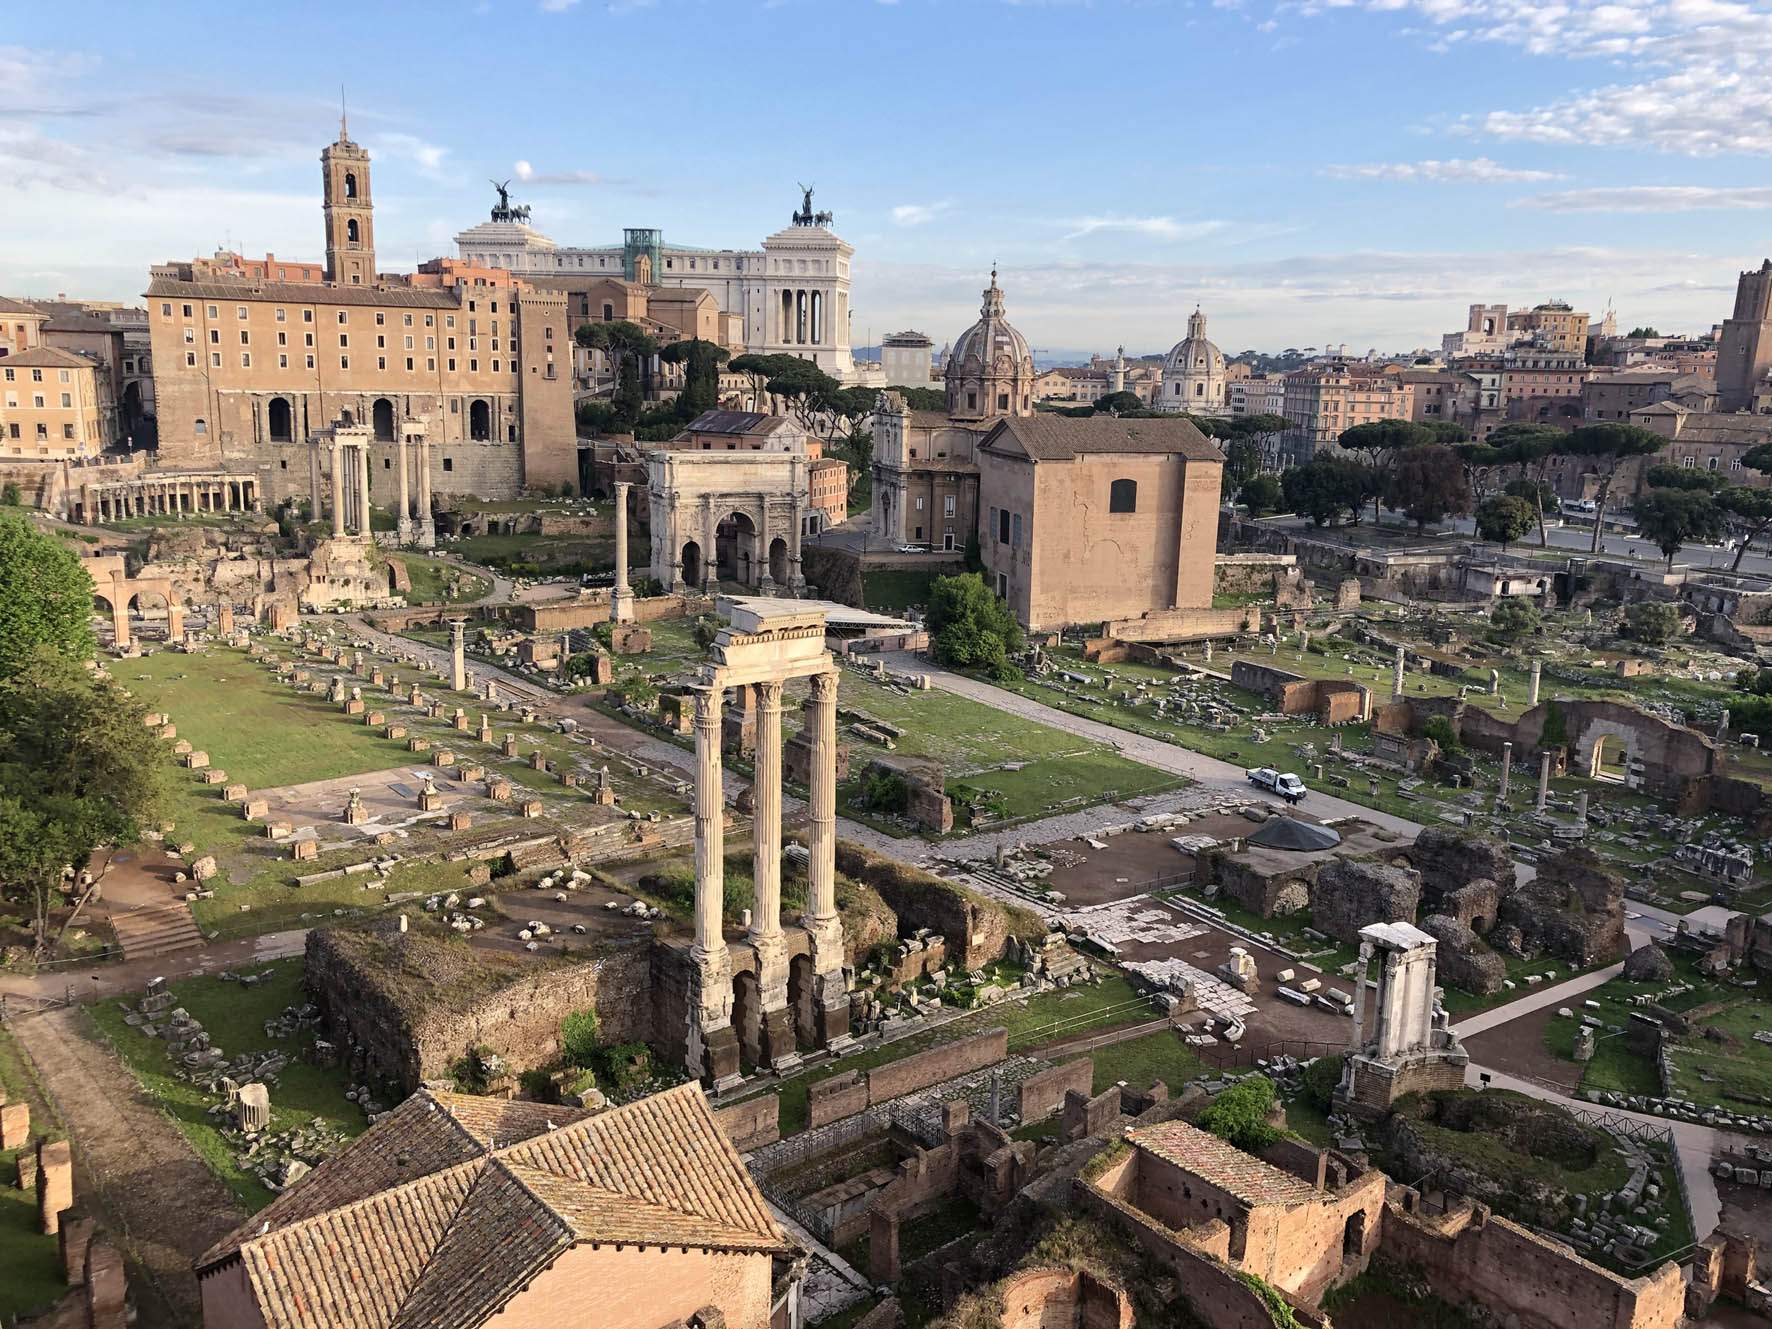 Il Parco del Colosseo lancia l'abbonamento annuale, la card che dà ingressi gratis senza limite